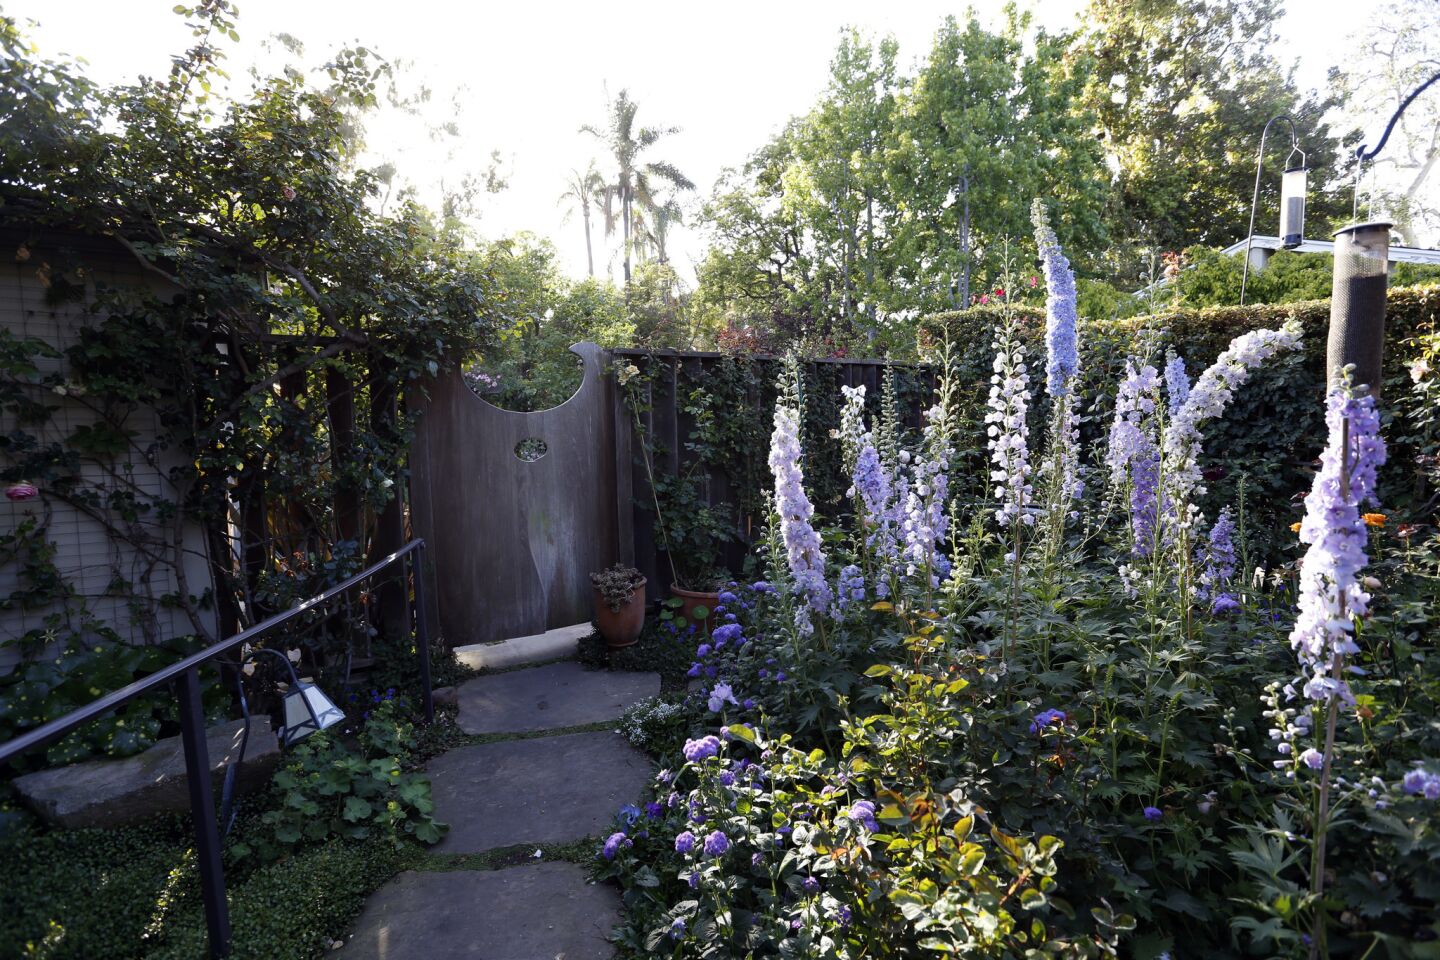 Julie Newmar's garden